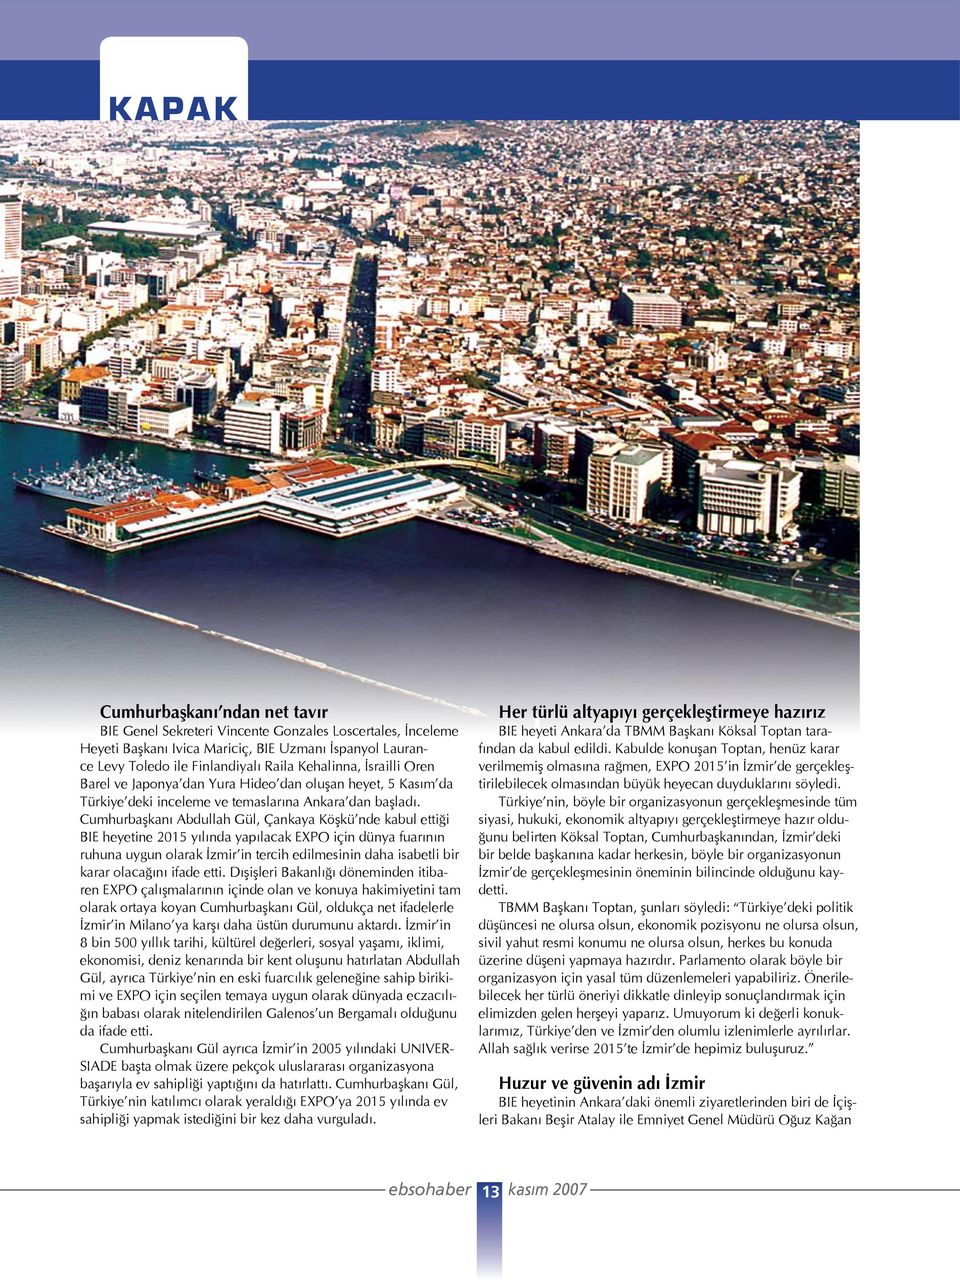 Cumhurbaşkanı Abdullah Gül, Çankaya Köşkü nde kabul ettiği BIE heyetine 2015 yılında yapılacak EXPO için dünya fuarının ruhuna uygun olarak İzmir in tercih edilmesinin daha isabetli bir karar